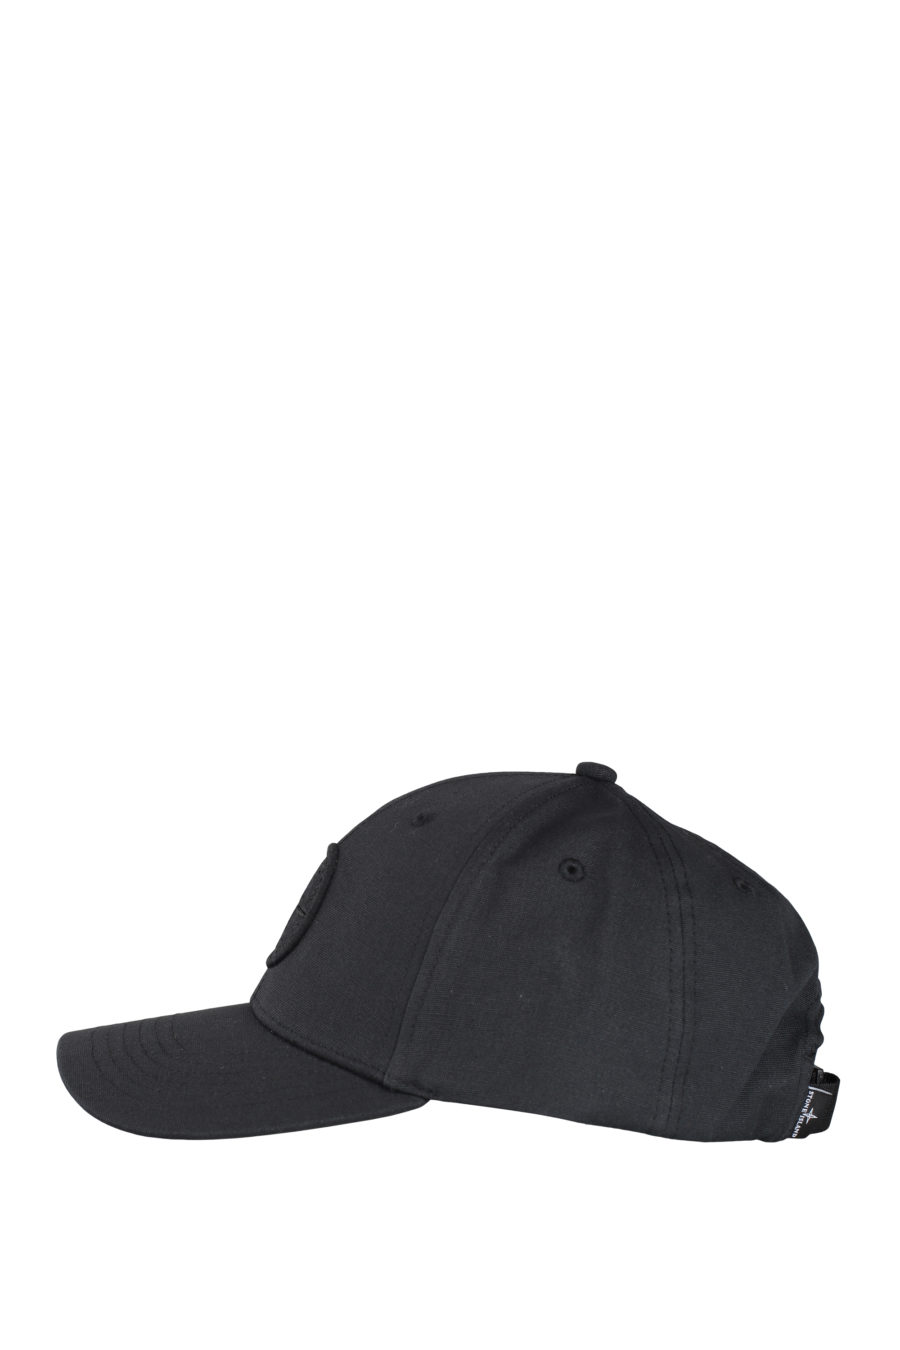 Gorra negra con logo parche - IMG 9710